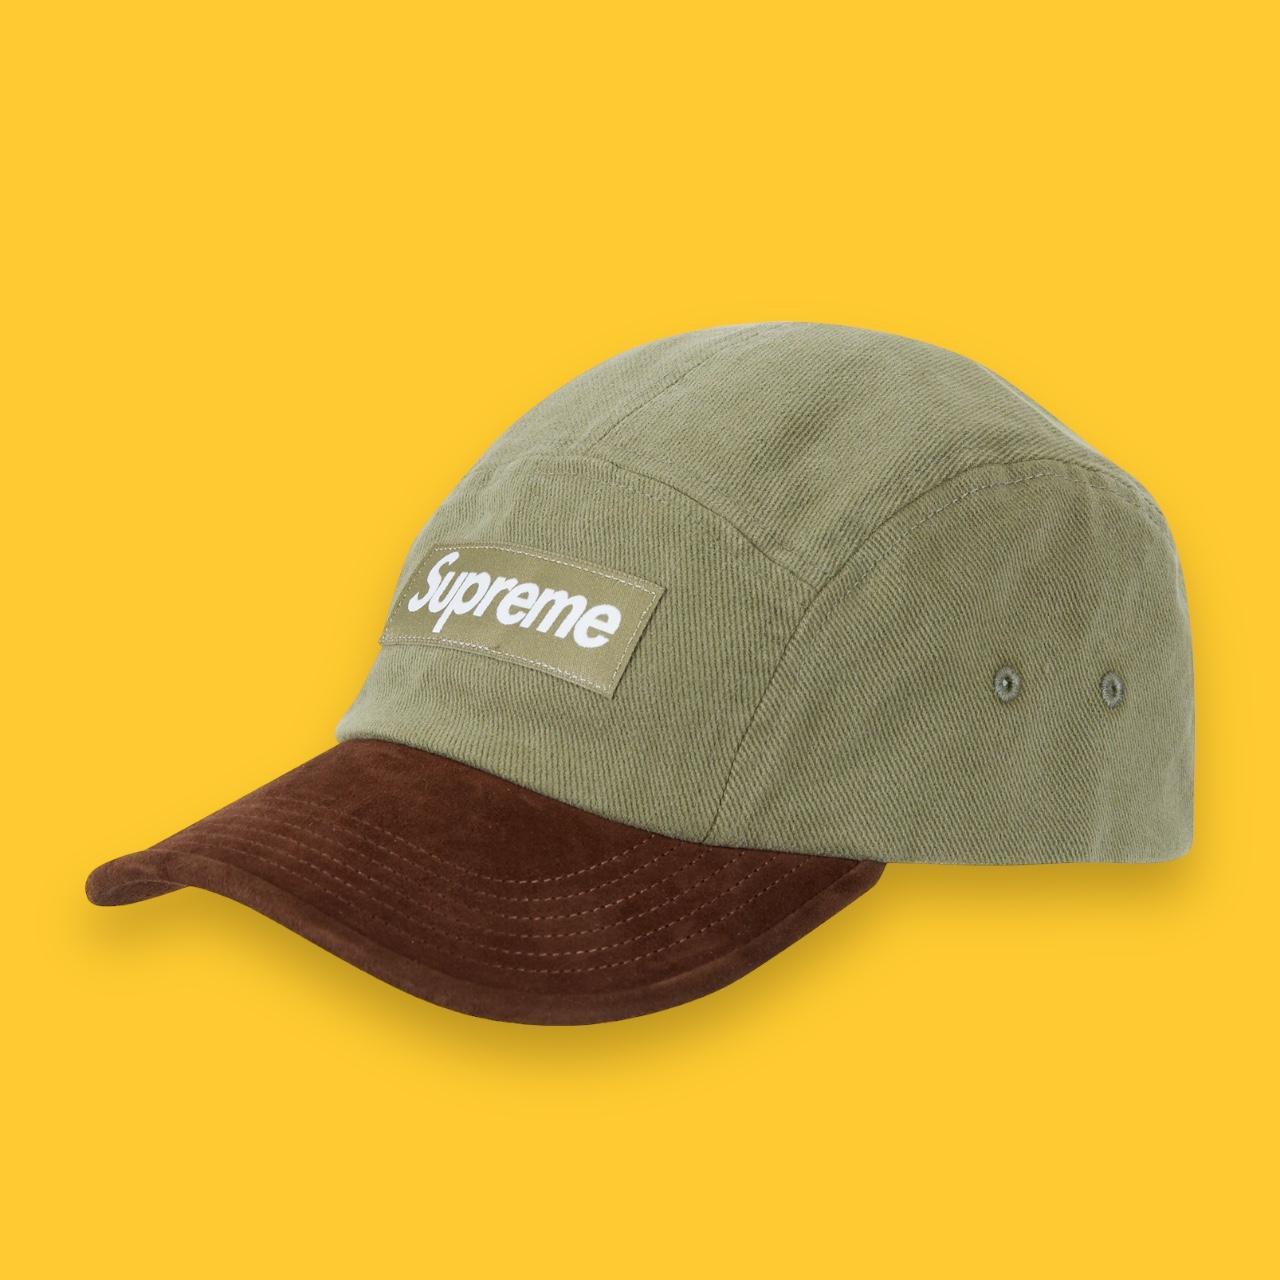 Supreme Suede Visor Camp Cap Hat Brand New Size... - Depop